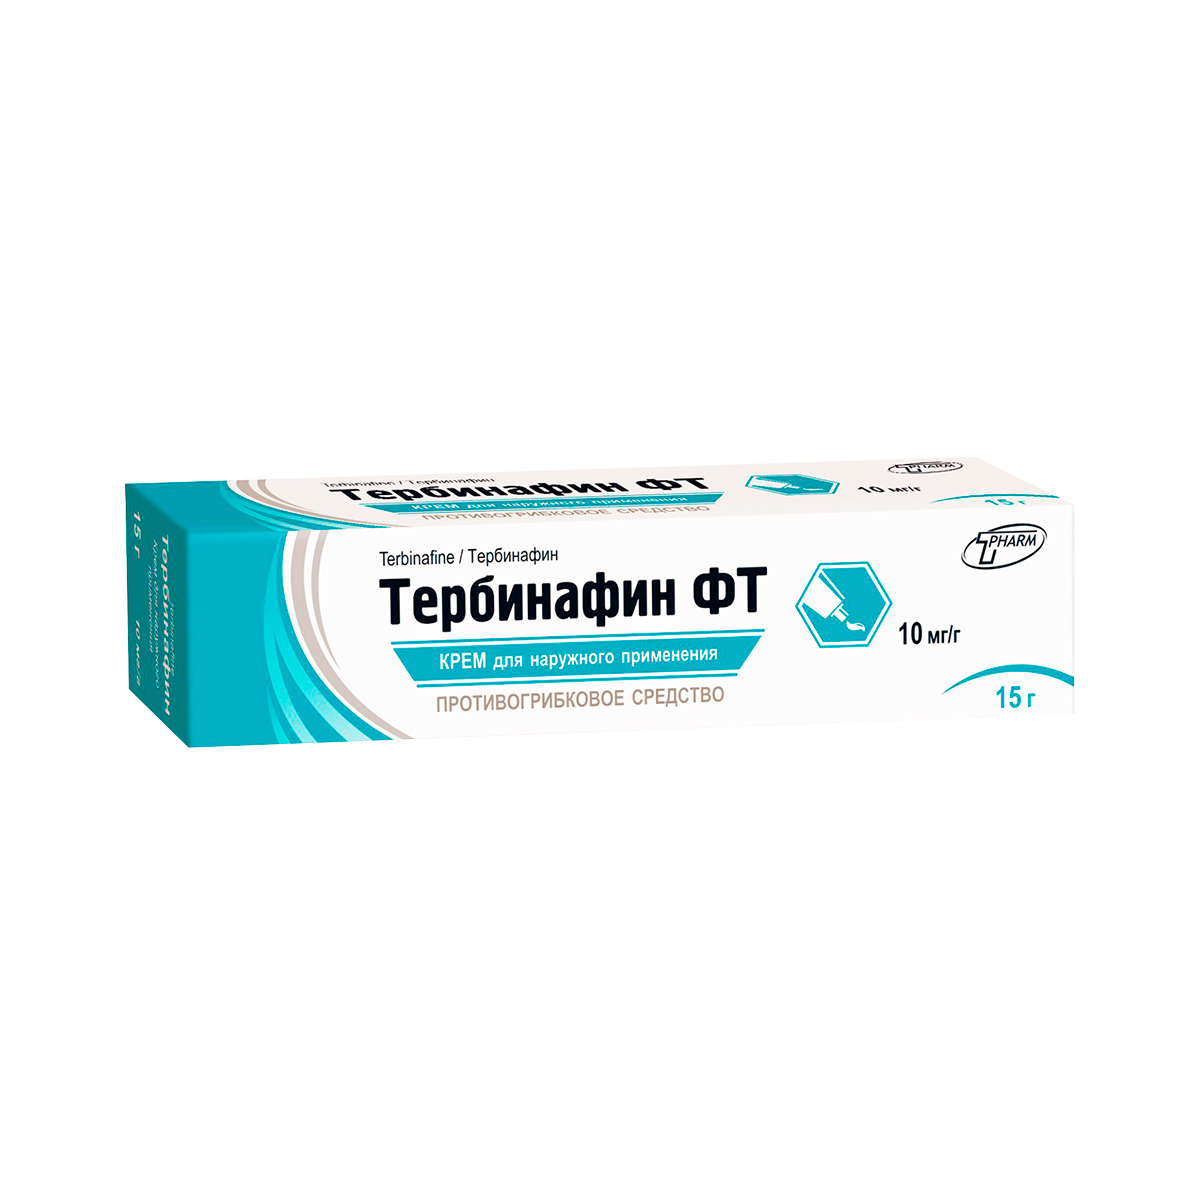 Тербинафин ФТ 10 мг/г крем для наружного применения 15 г туба 1 шт